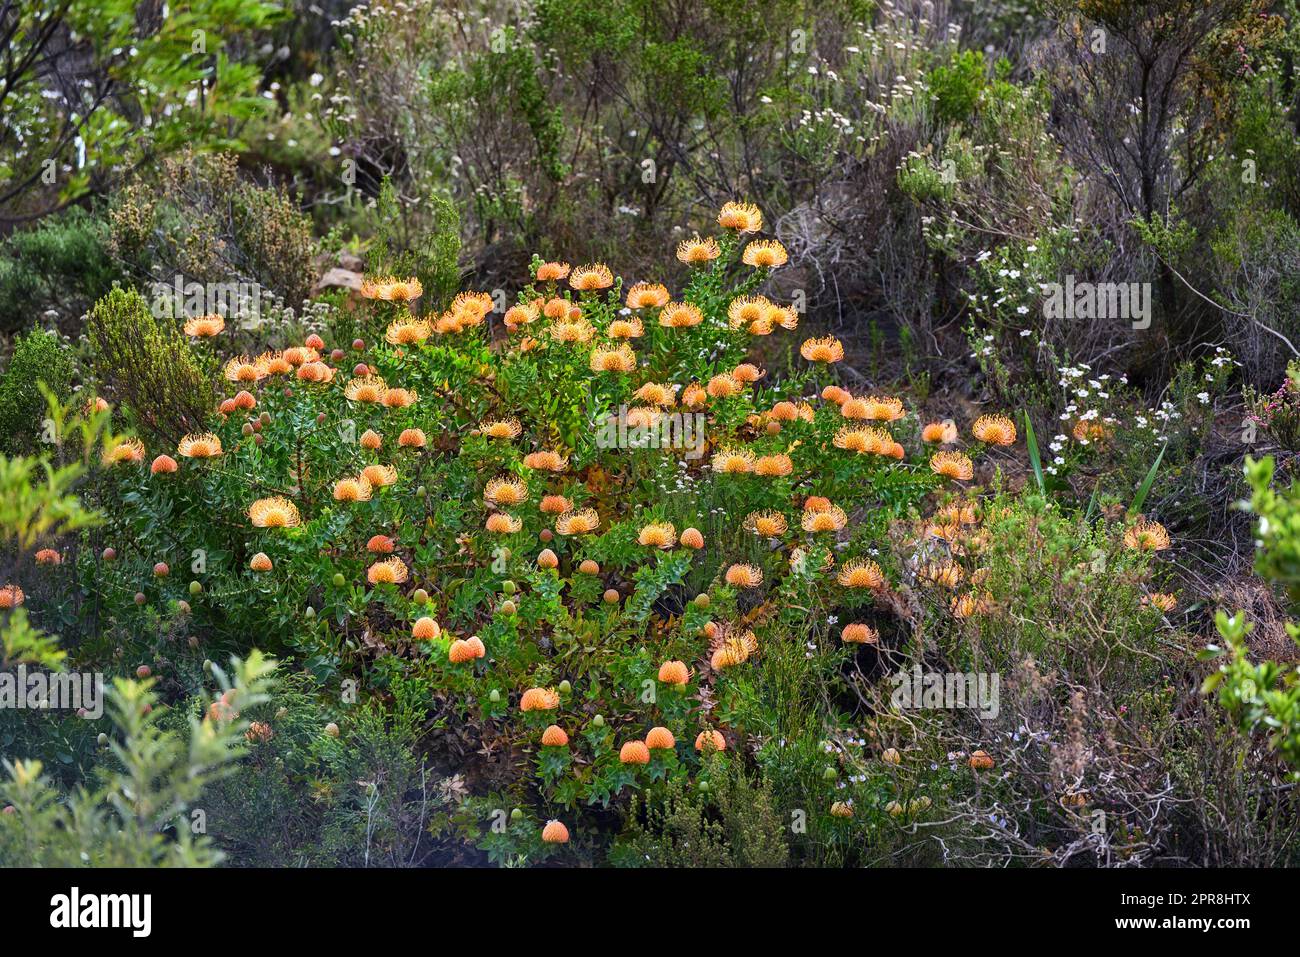 Oben sehen Sie Orangen-protea-Blumen, die in ihrem natürlichen Lebensraum wachsen. Pflanzen und Vegetation wachsen und gedeihen auf einem Berg in einem luftigen Wald oder Wald als Teil der landschaftlich schönen Natur Stockfoto